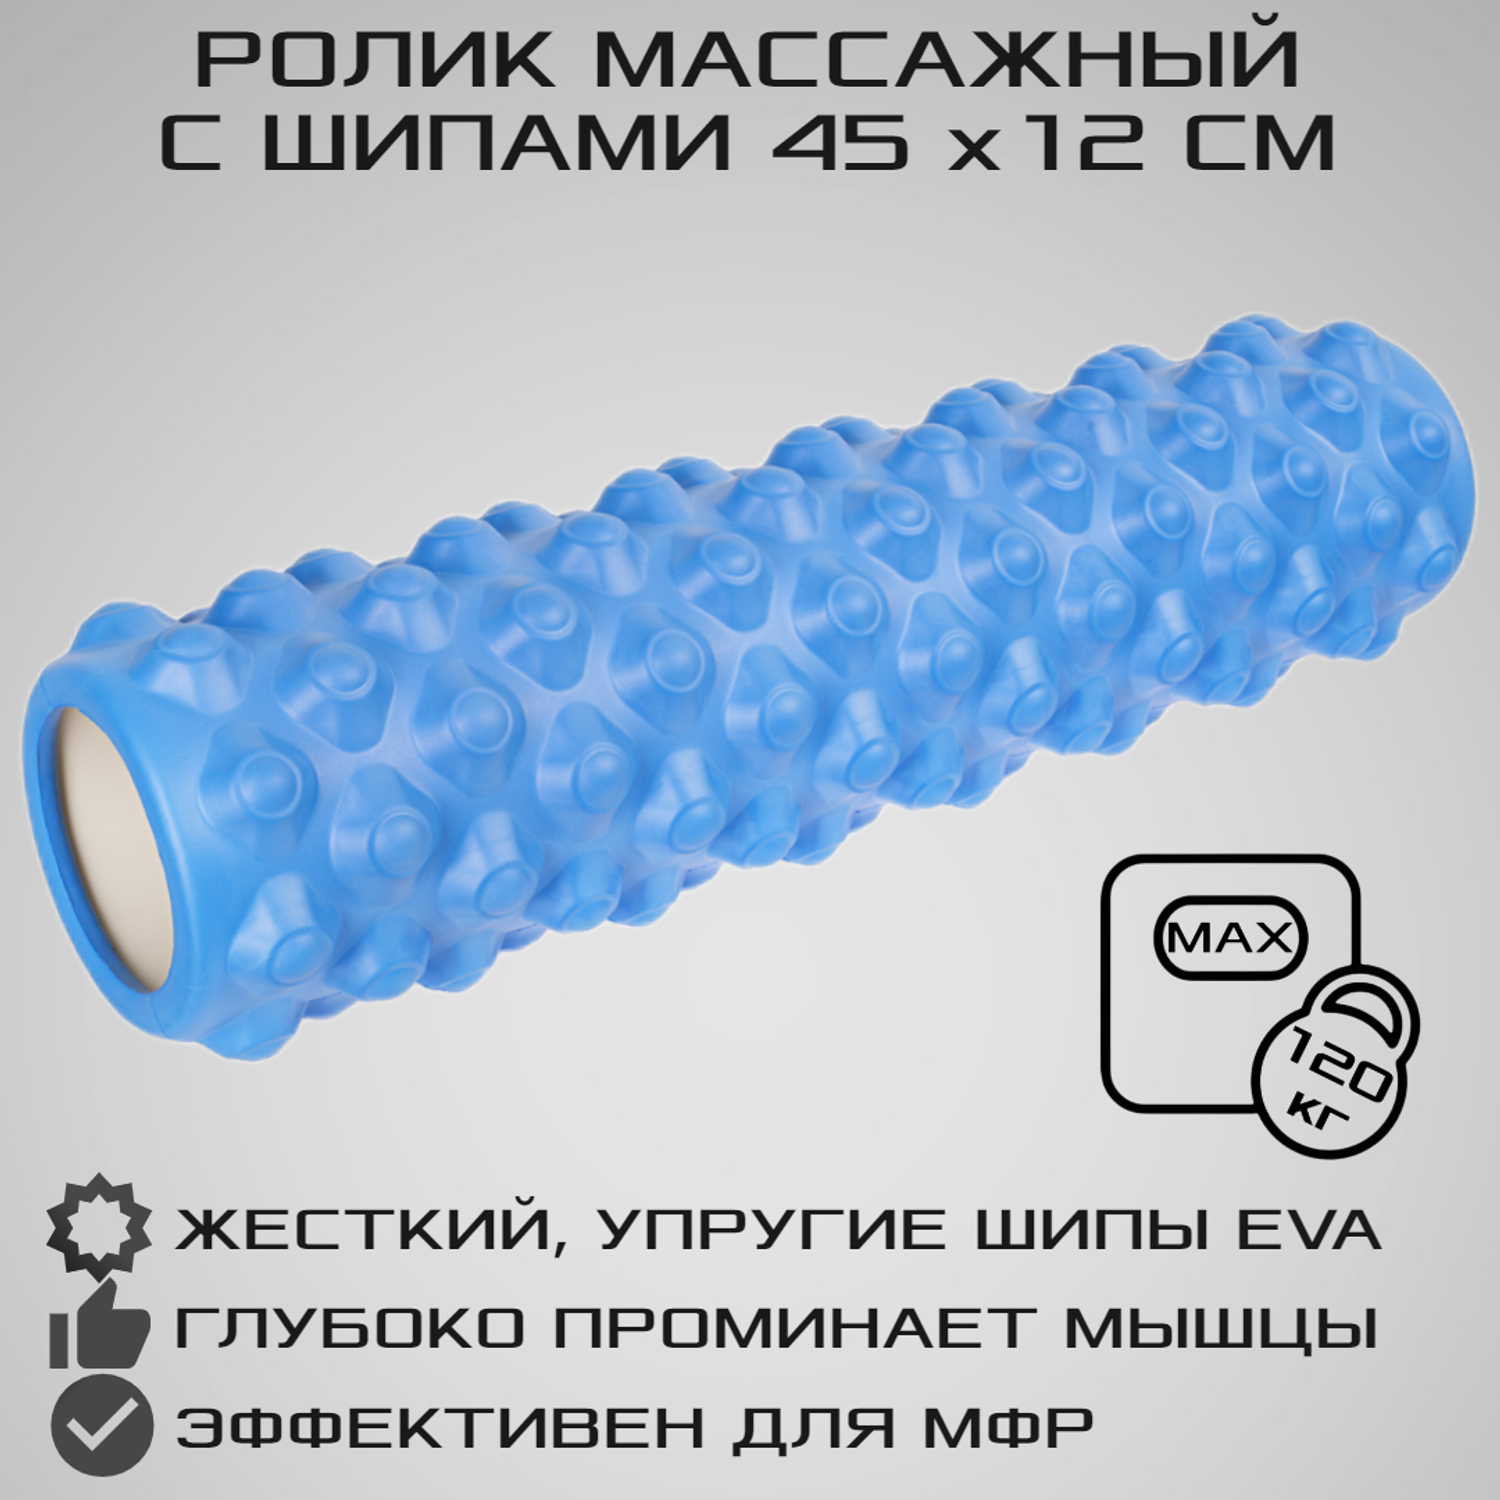 Ролик массажный STRONG BODY с шипами спортивный для фитнеса МФР йоги и пилатес 45 см х 12 см синий - фото 1